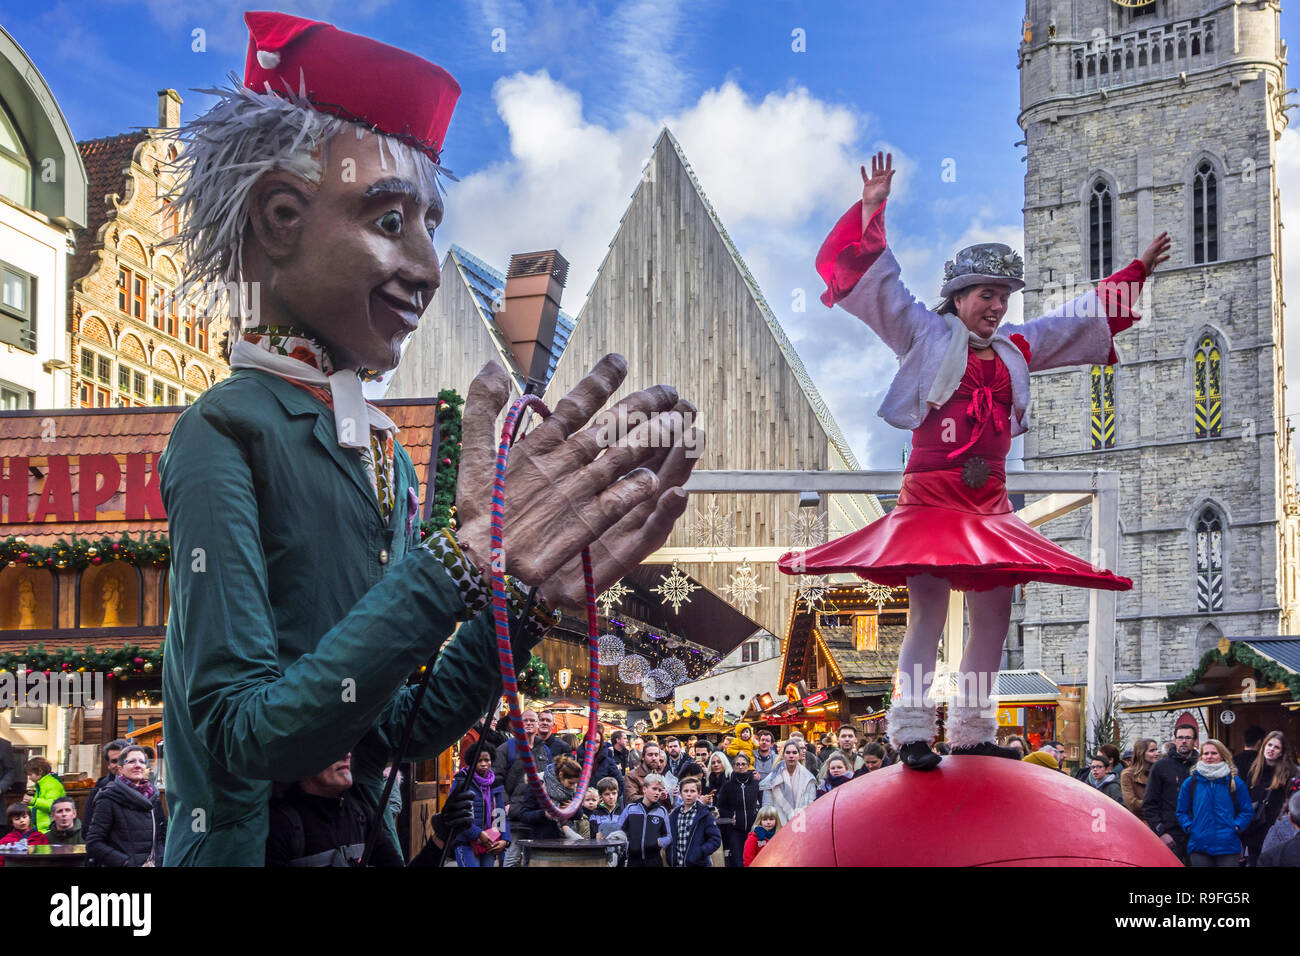 Puppenspielerin und Street Performer der Balanceakt auf riesige Kugel während der Weihnachtsmarkt im Winter in Gent, Flandern, Belgien Stockfoto